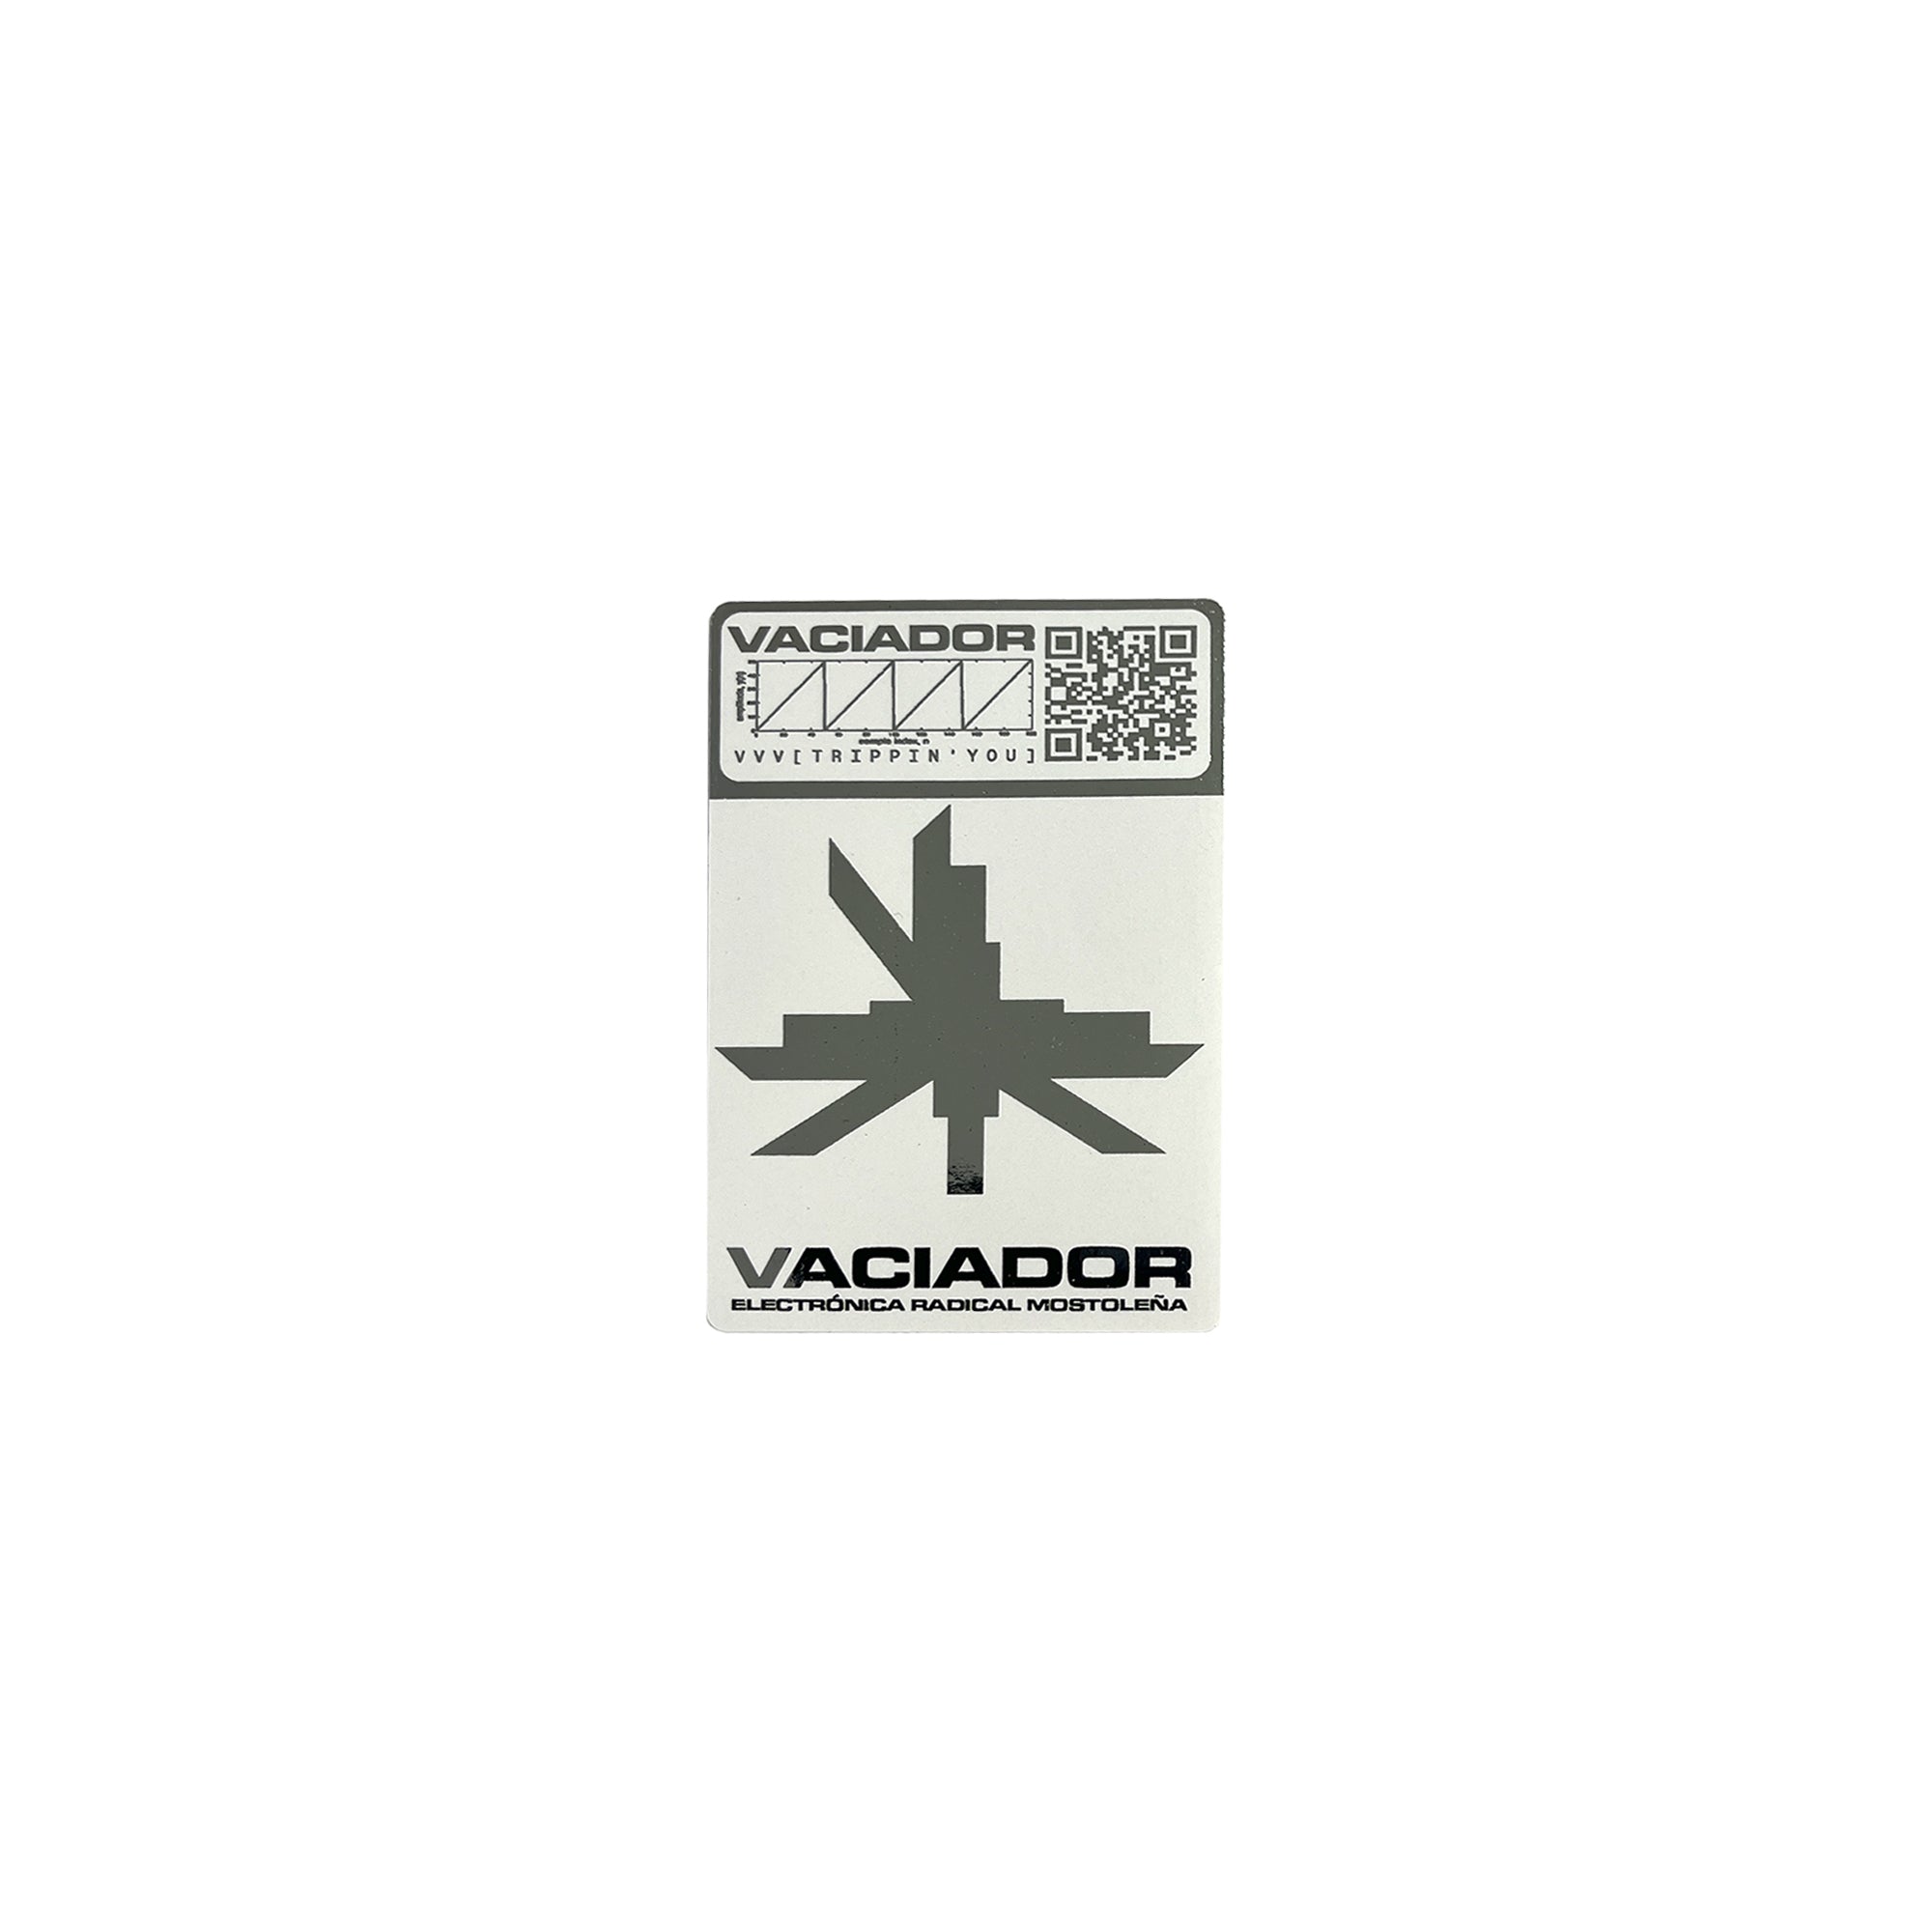 VVV [Trippin’you] ✶ Stickers VACIADOR